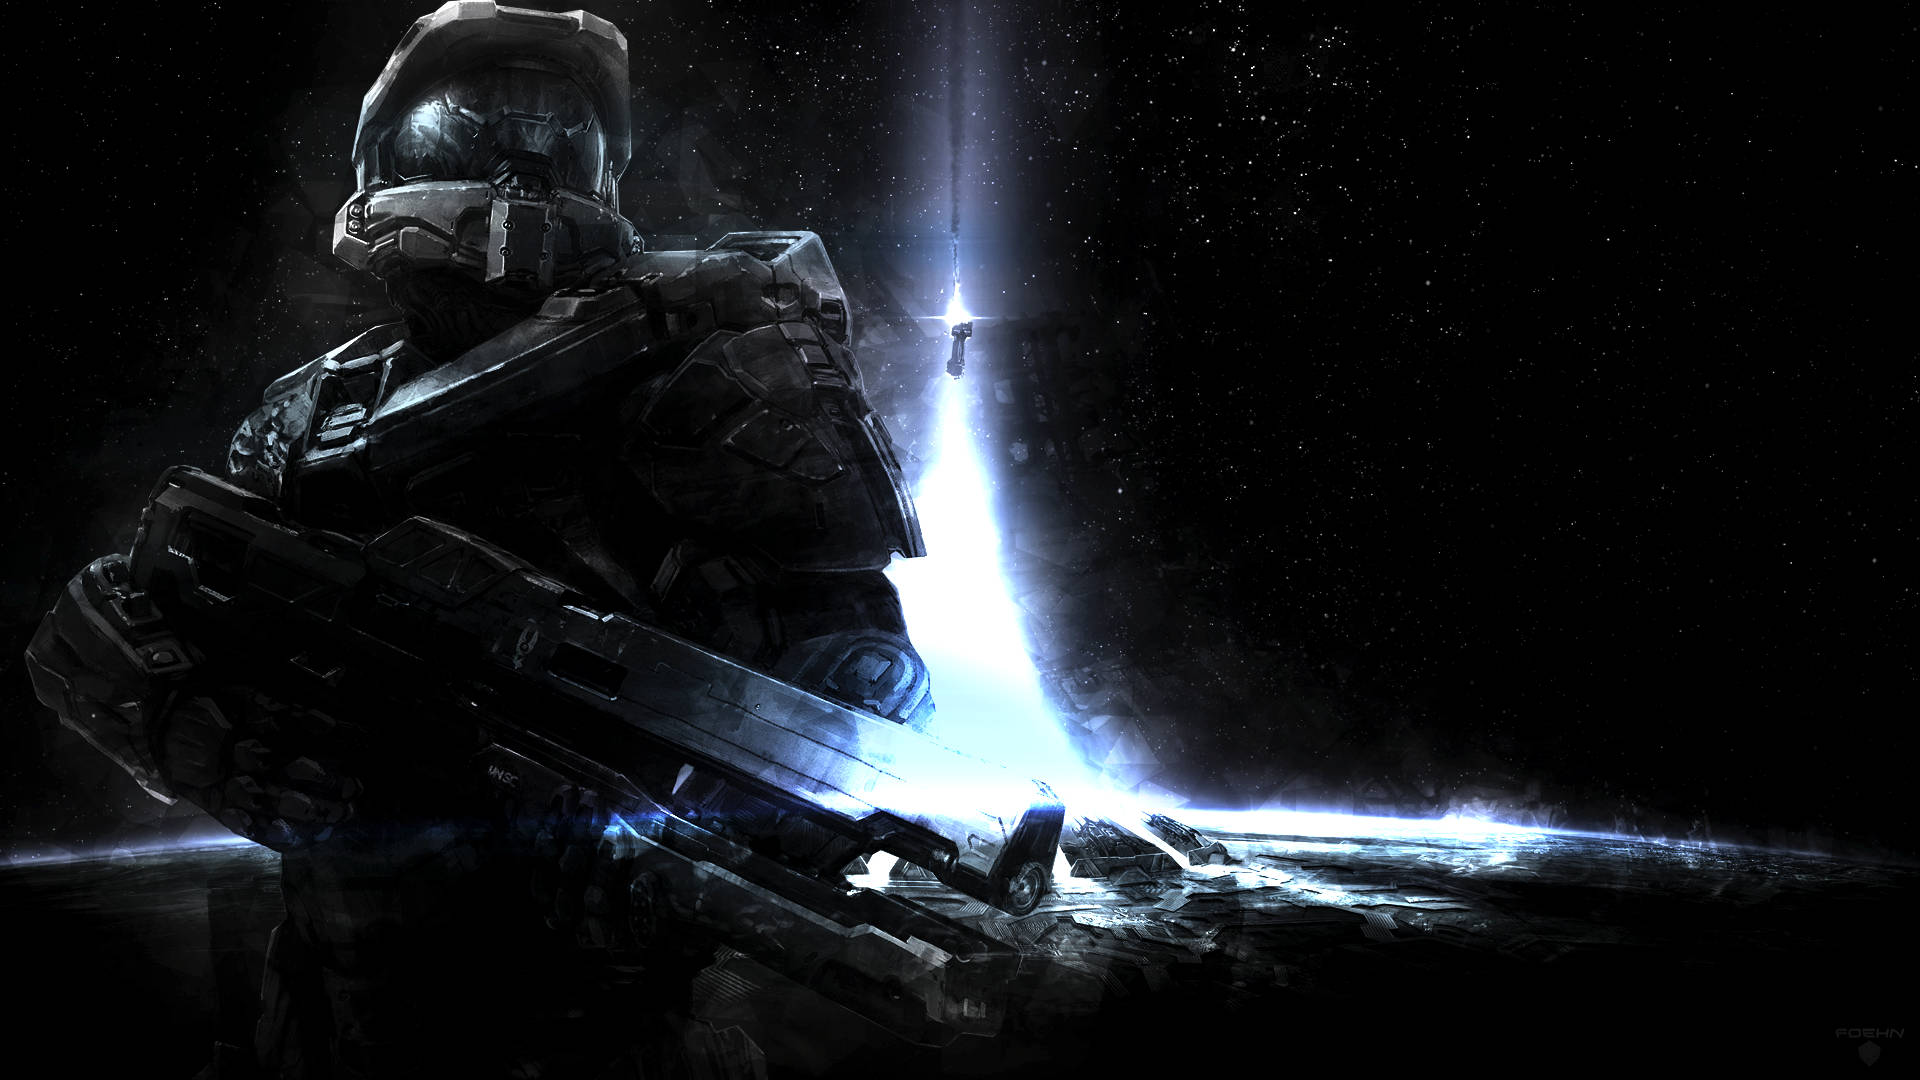 Halo 4 Interstellar Spartan Warrior Wallpaper